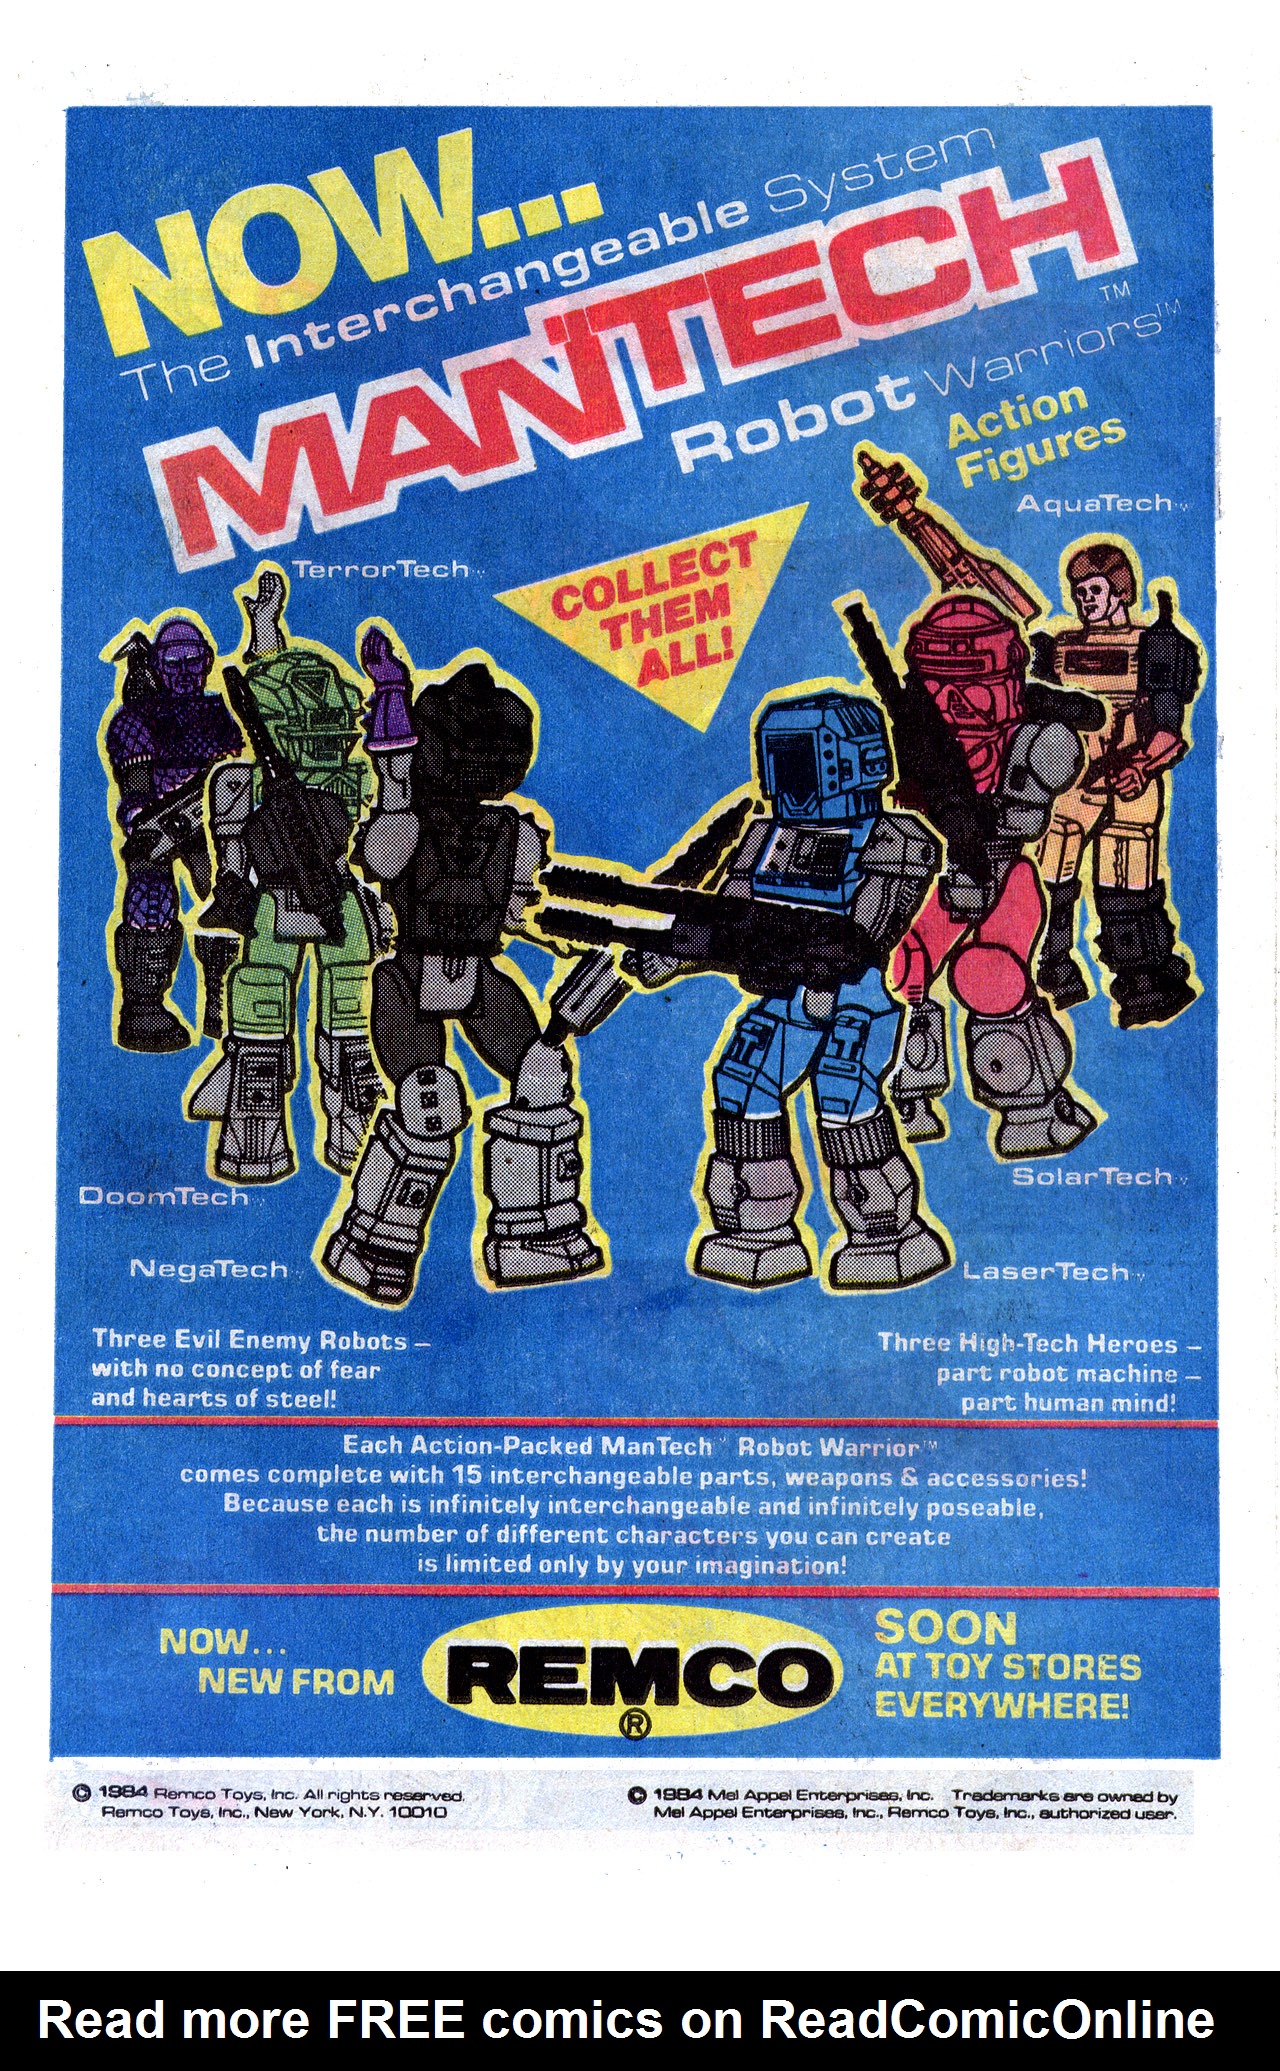 Read online ManTech Robot Warriors comic -  Issue #1 - 19